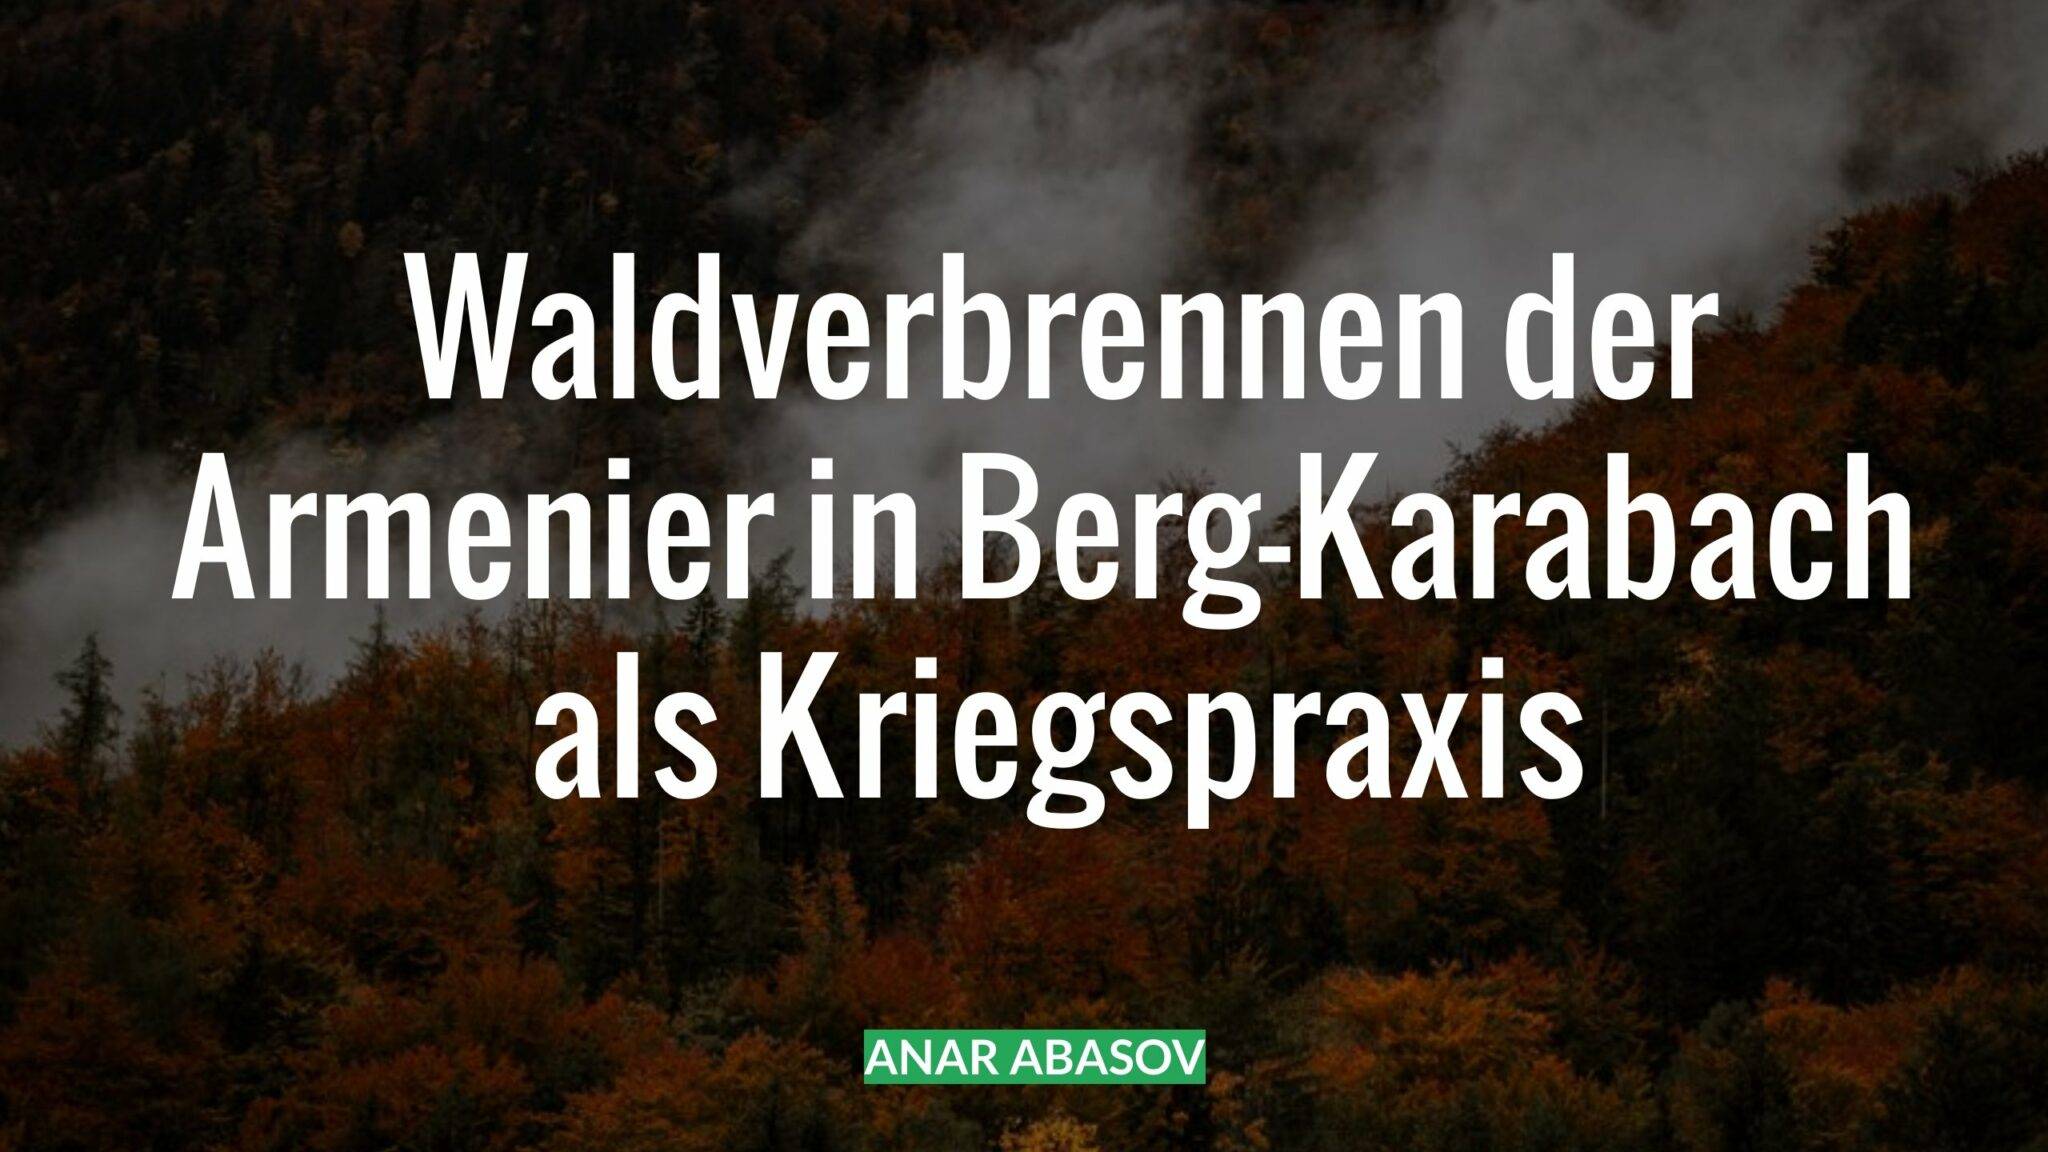 Anar Abasov: Waldverbrennen der Armenier in Berg-Karabach als Kriegspraxis